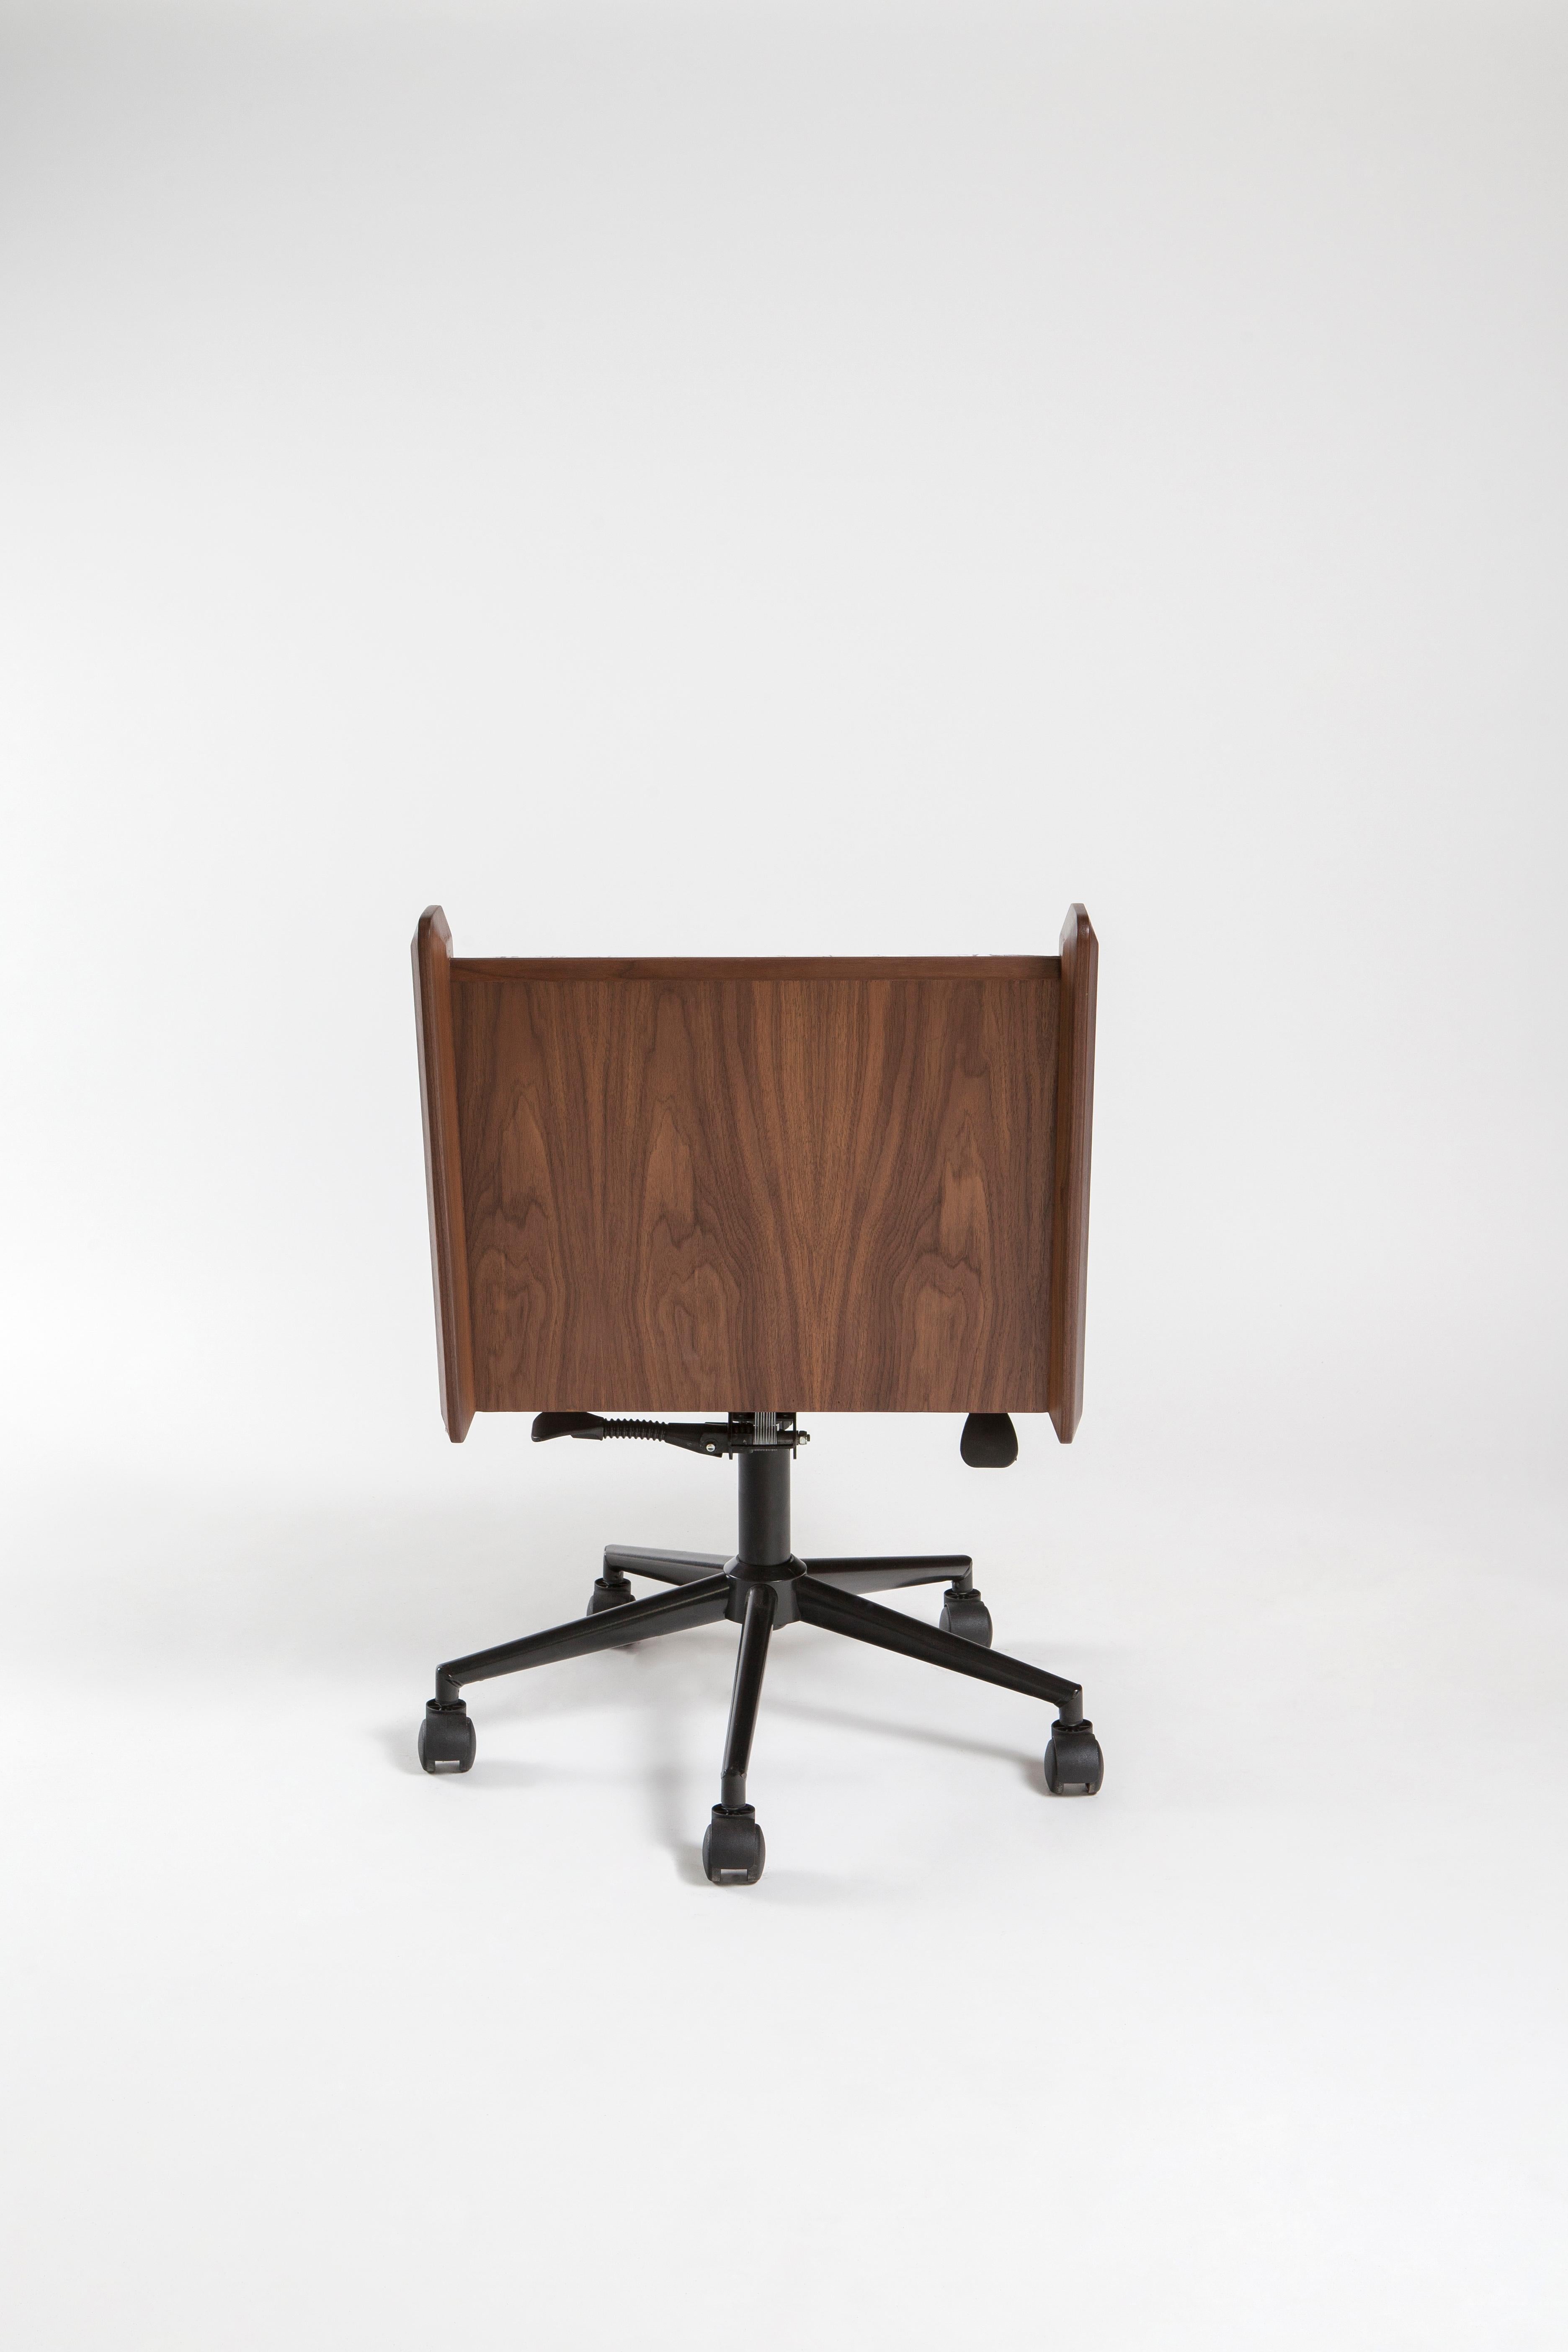 Turc Fauteuil de salon, chaise longue en bois ou en cuir de style international, fauteuil de bureau en vente